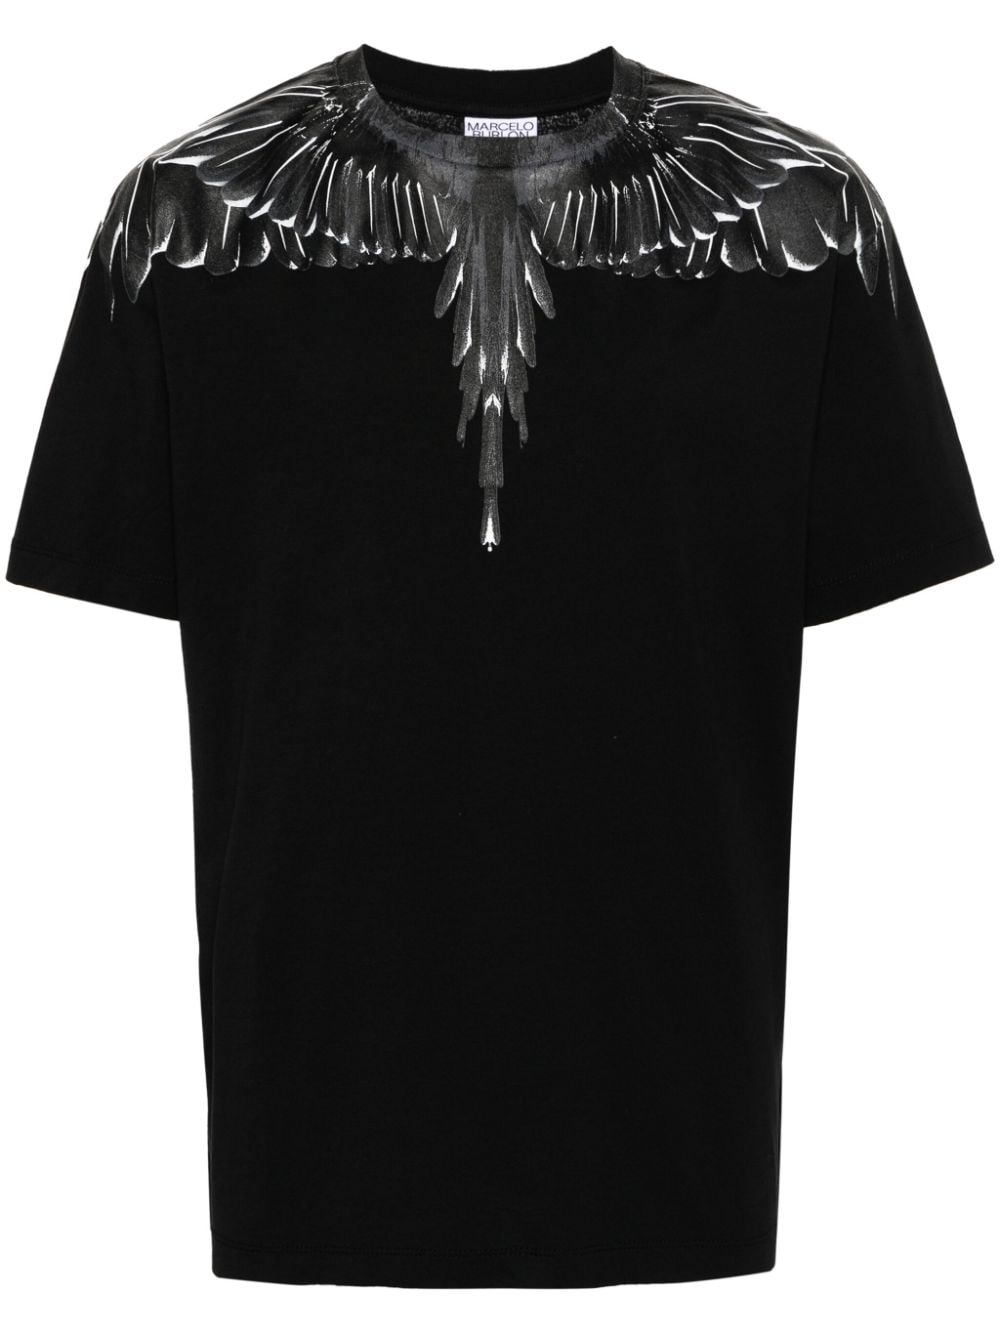 T-shirt nera stampa icon wings nera